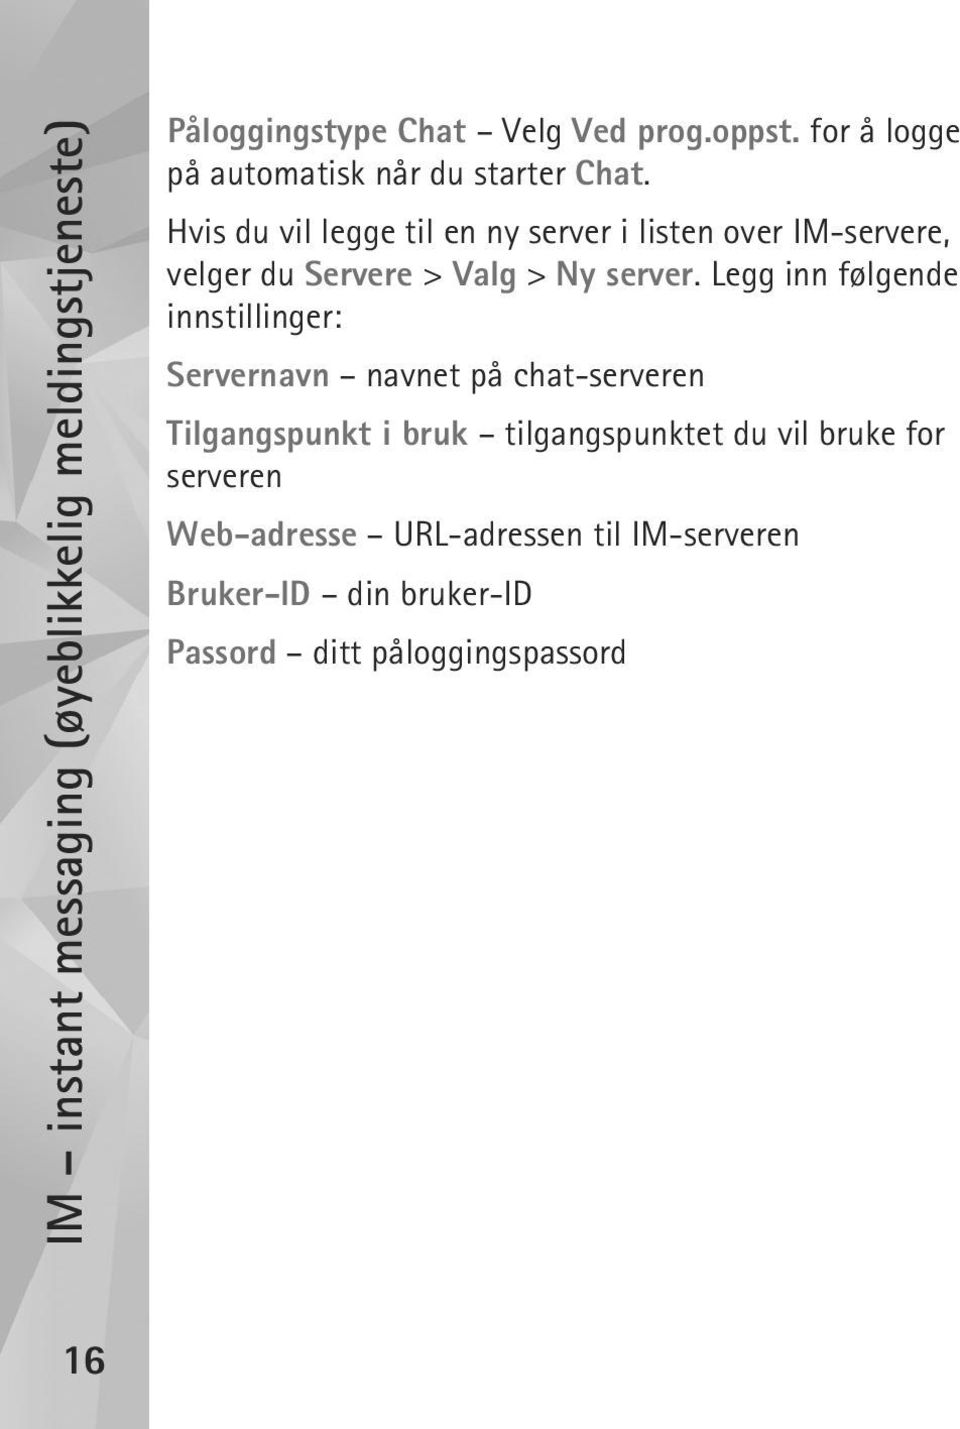 Hvis du vil legge til en ny server i listen over IM-servere, velger du Servere > Valg > Ny server.